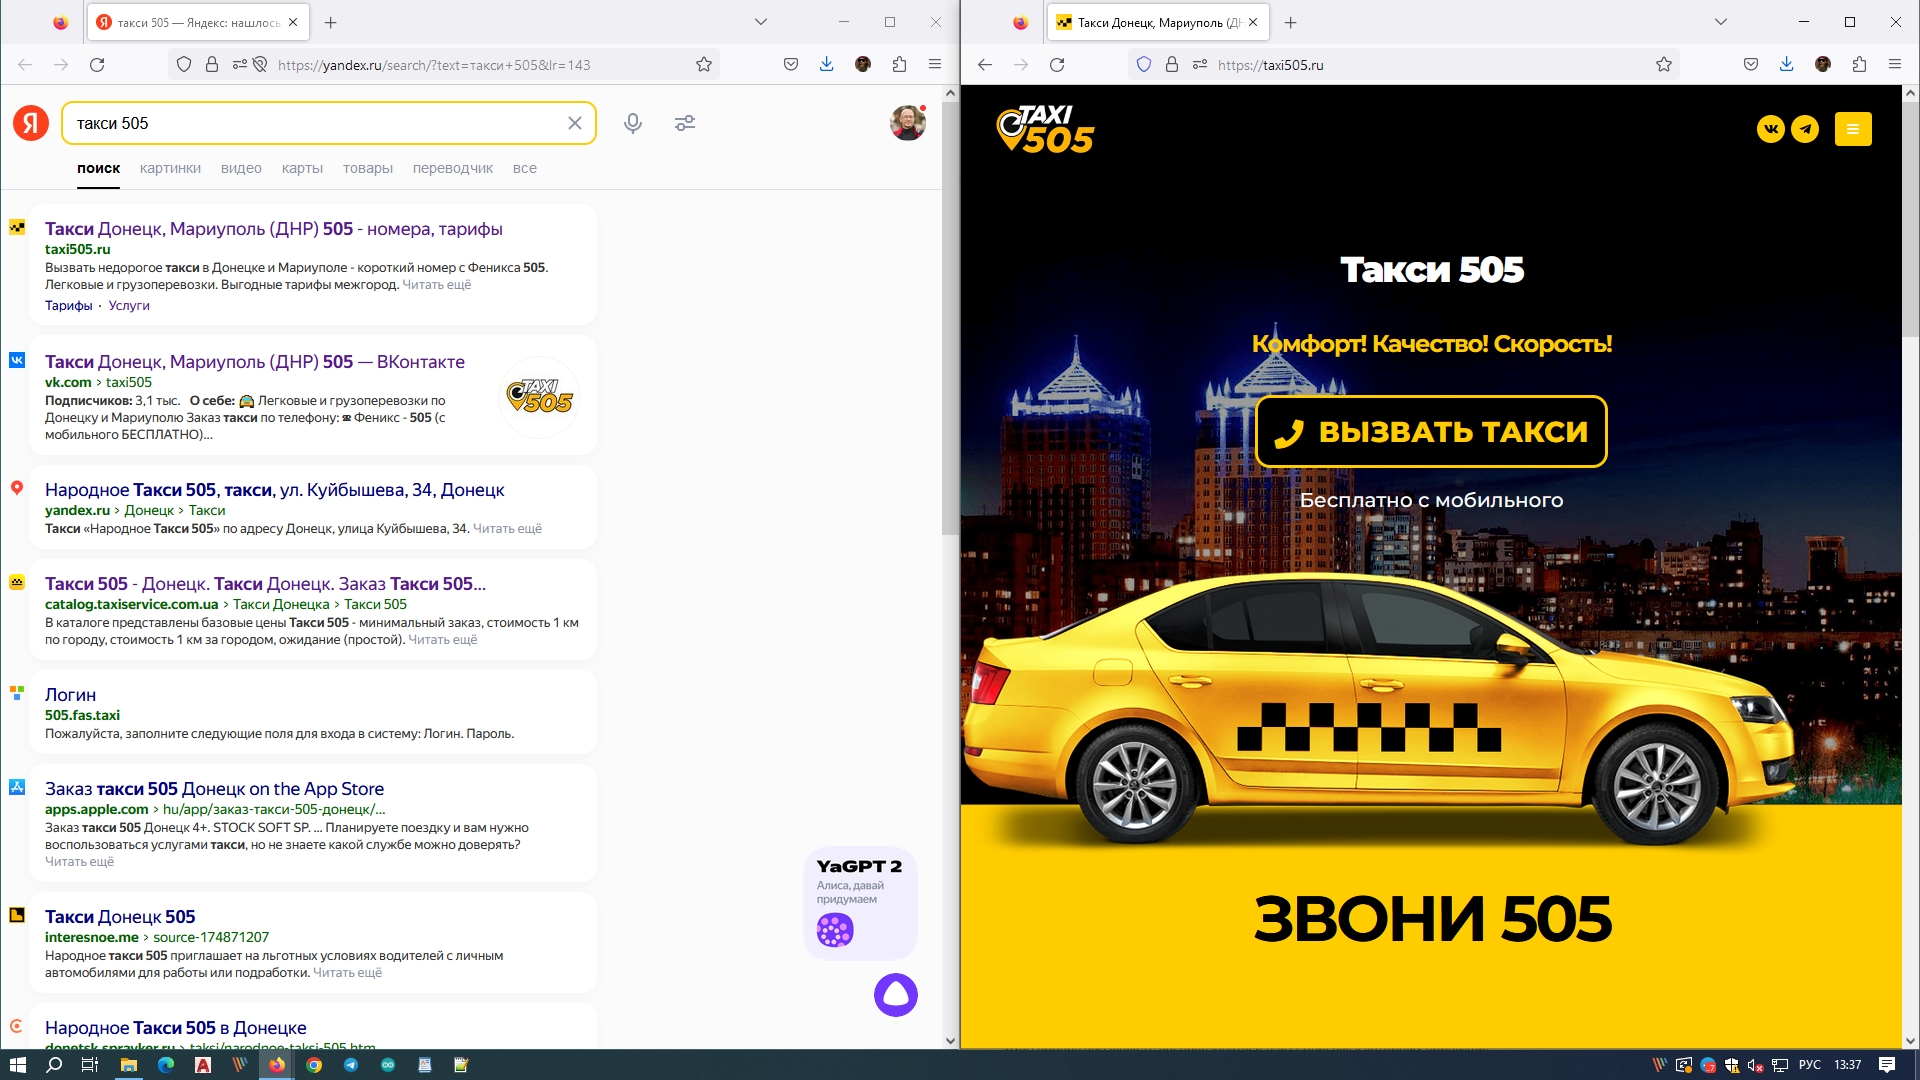 Создание сайта и настройка рекламы для службы такси 505